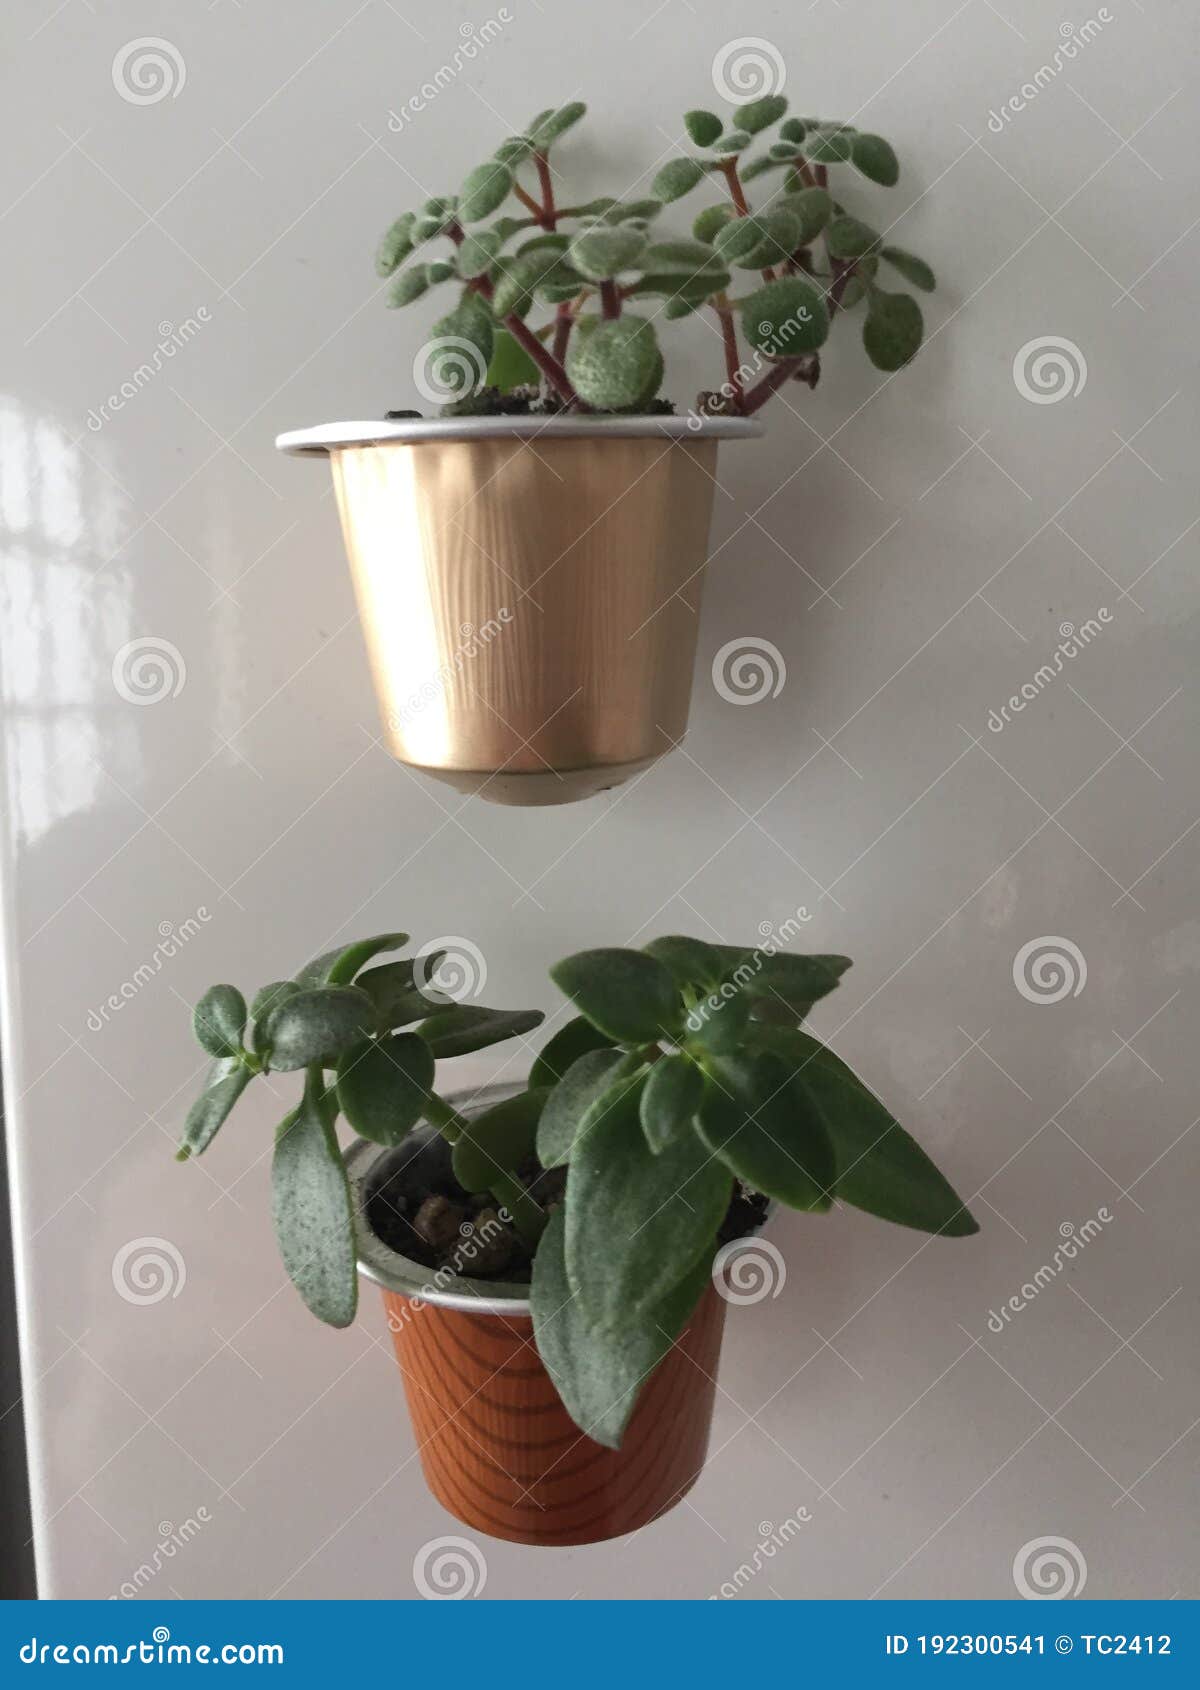 little plants